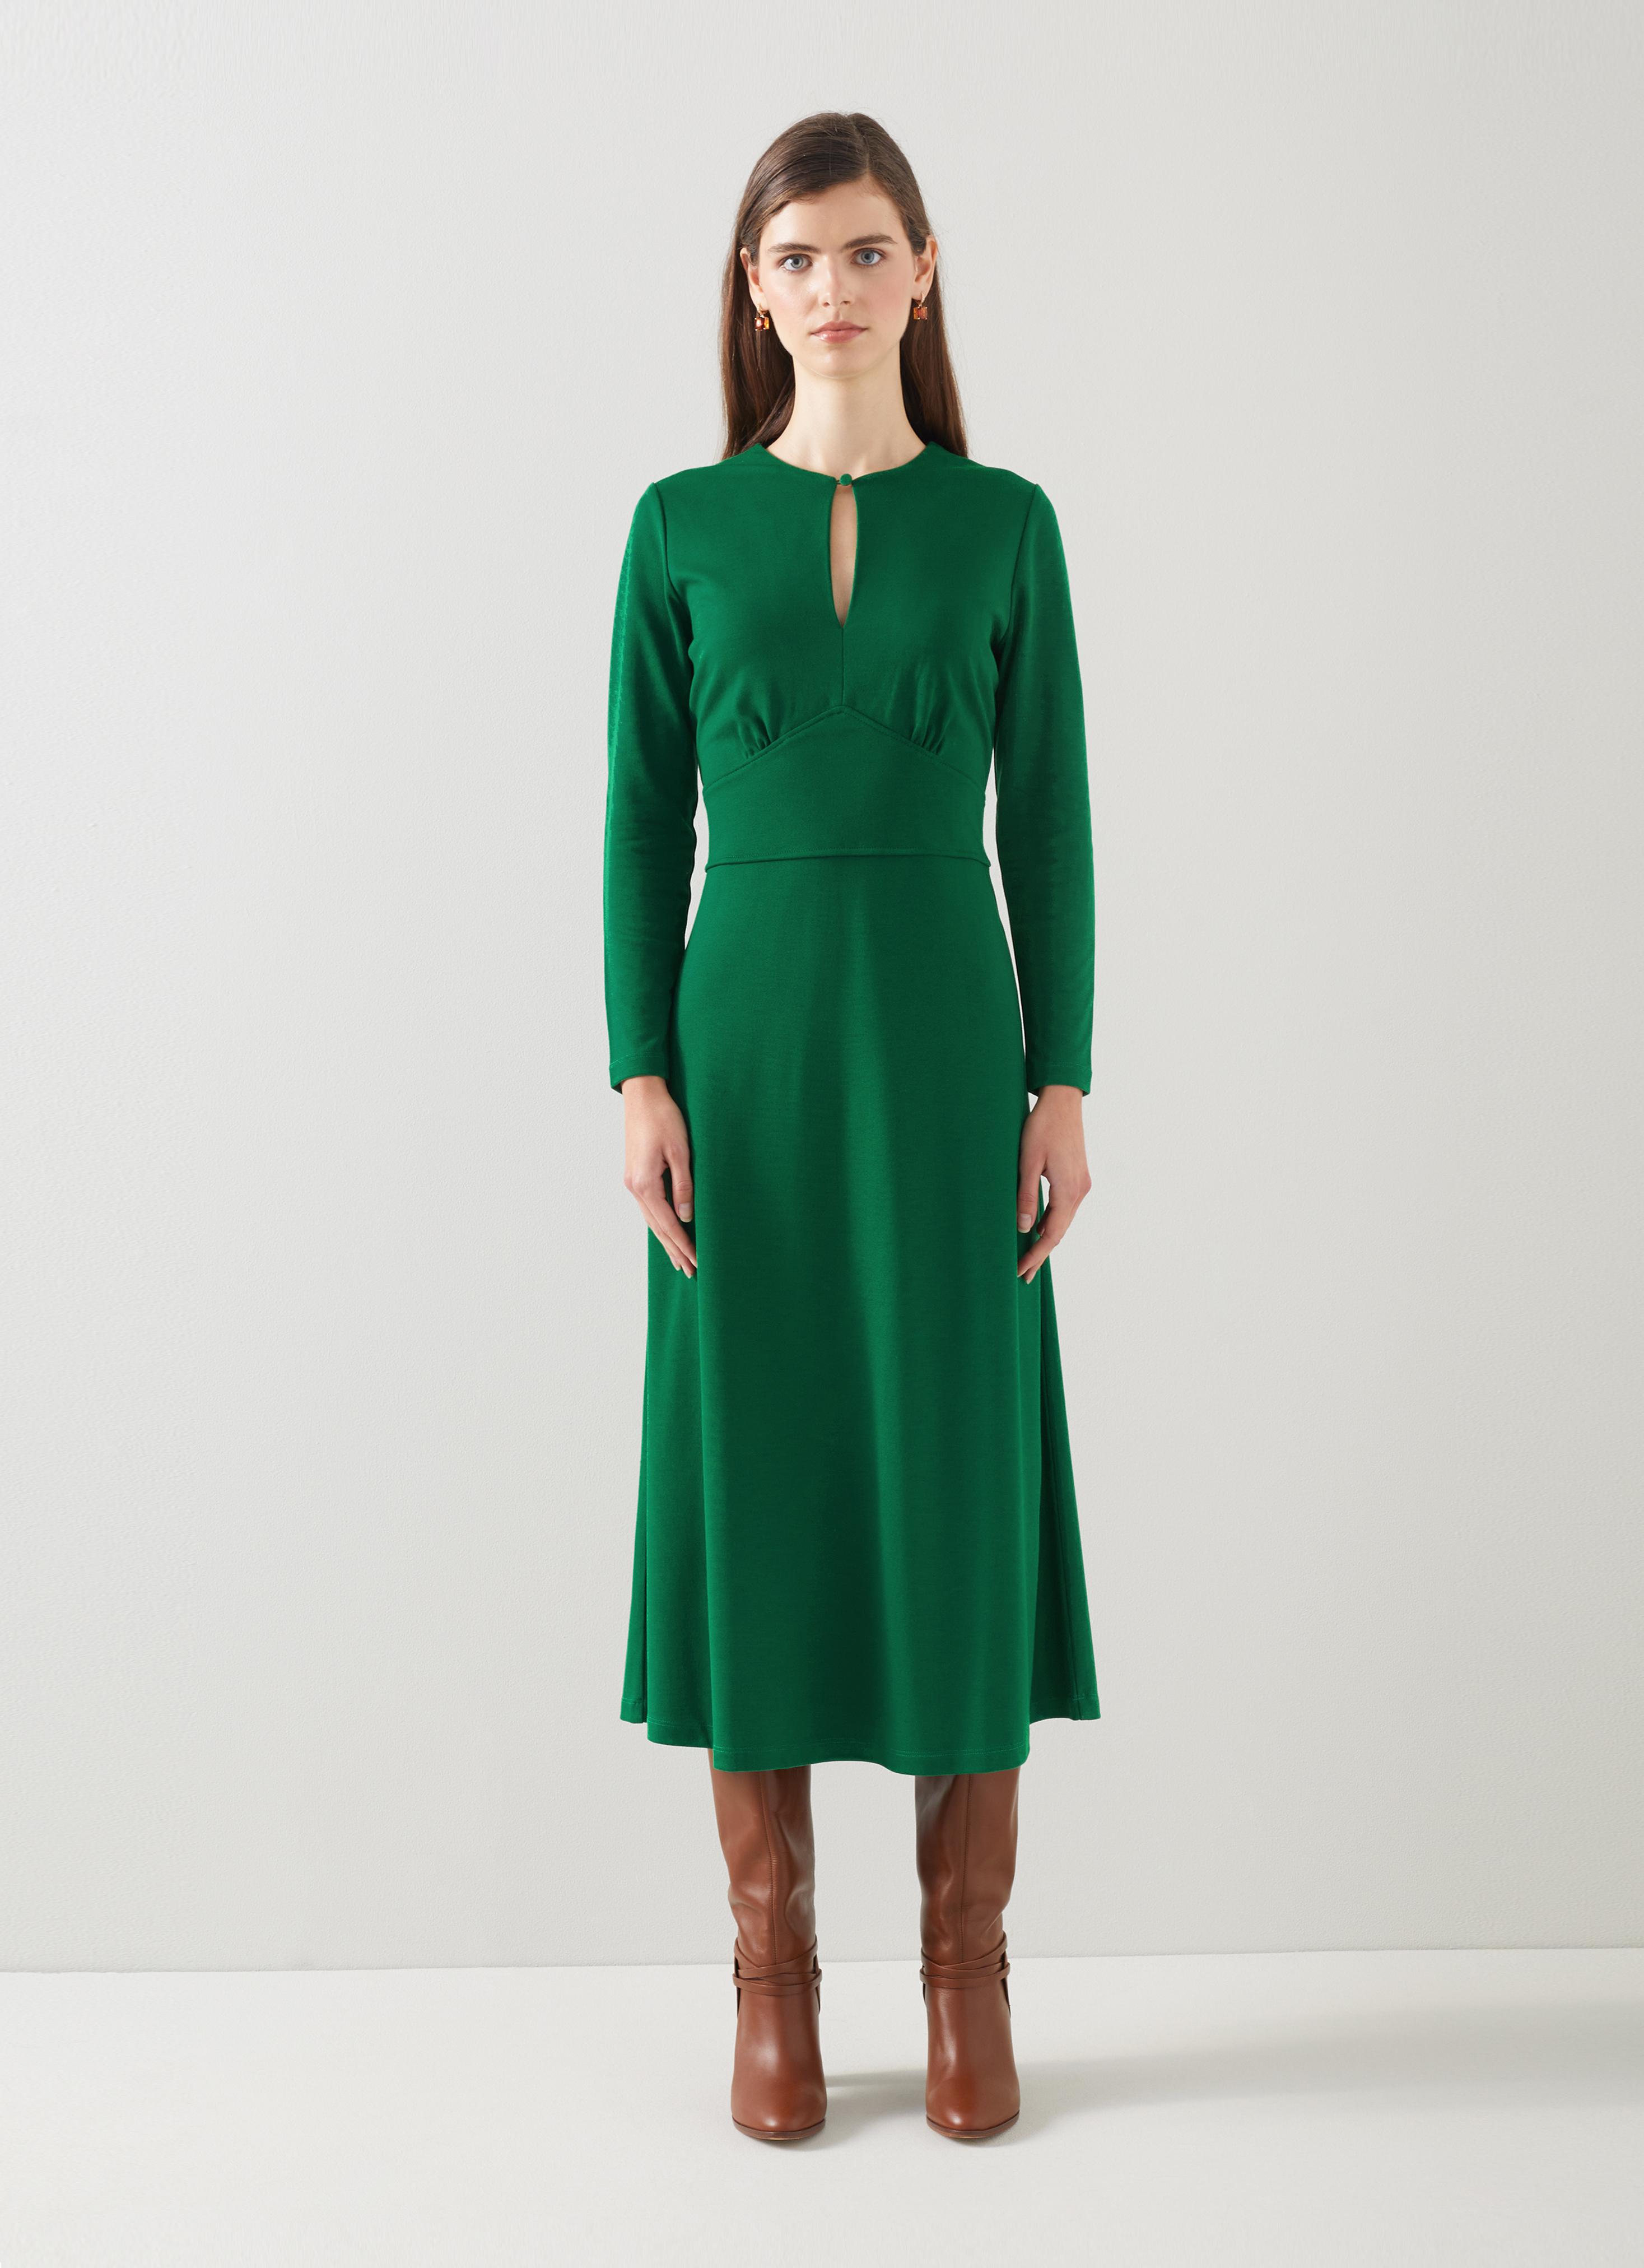 L.K.Bennett Sera Green Dress with LENZING ECOVERO viscose, Dark Green